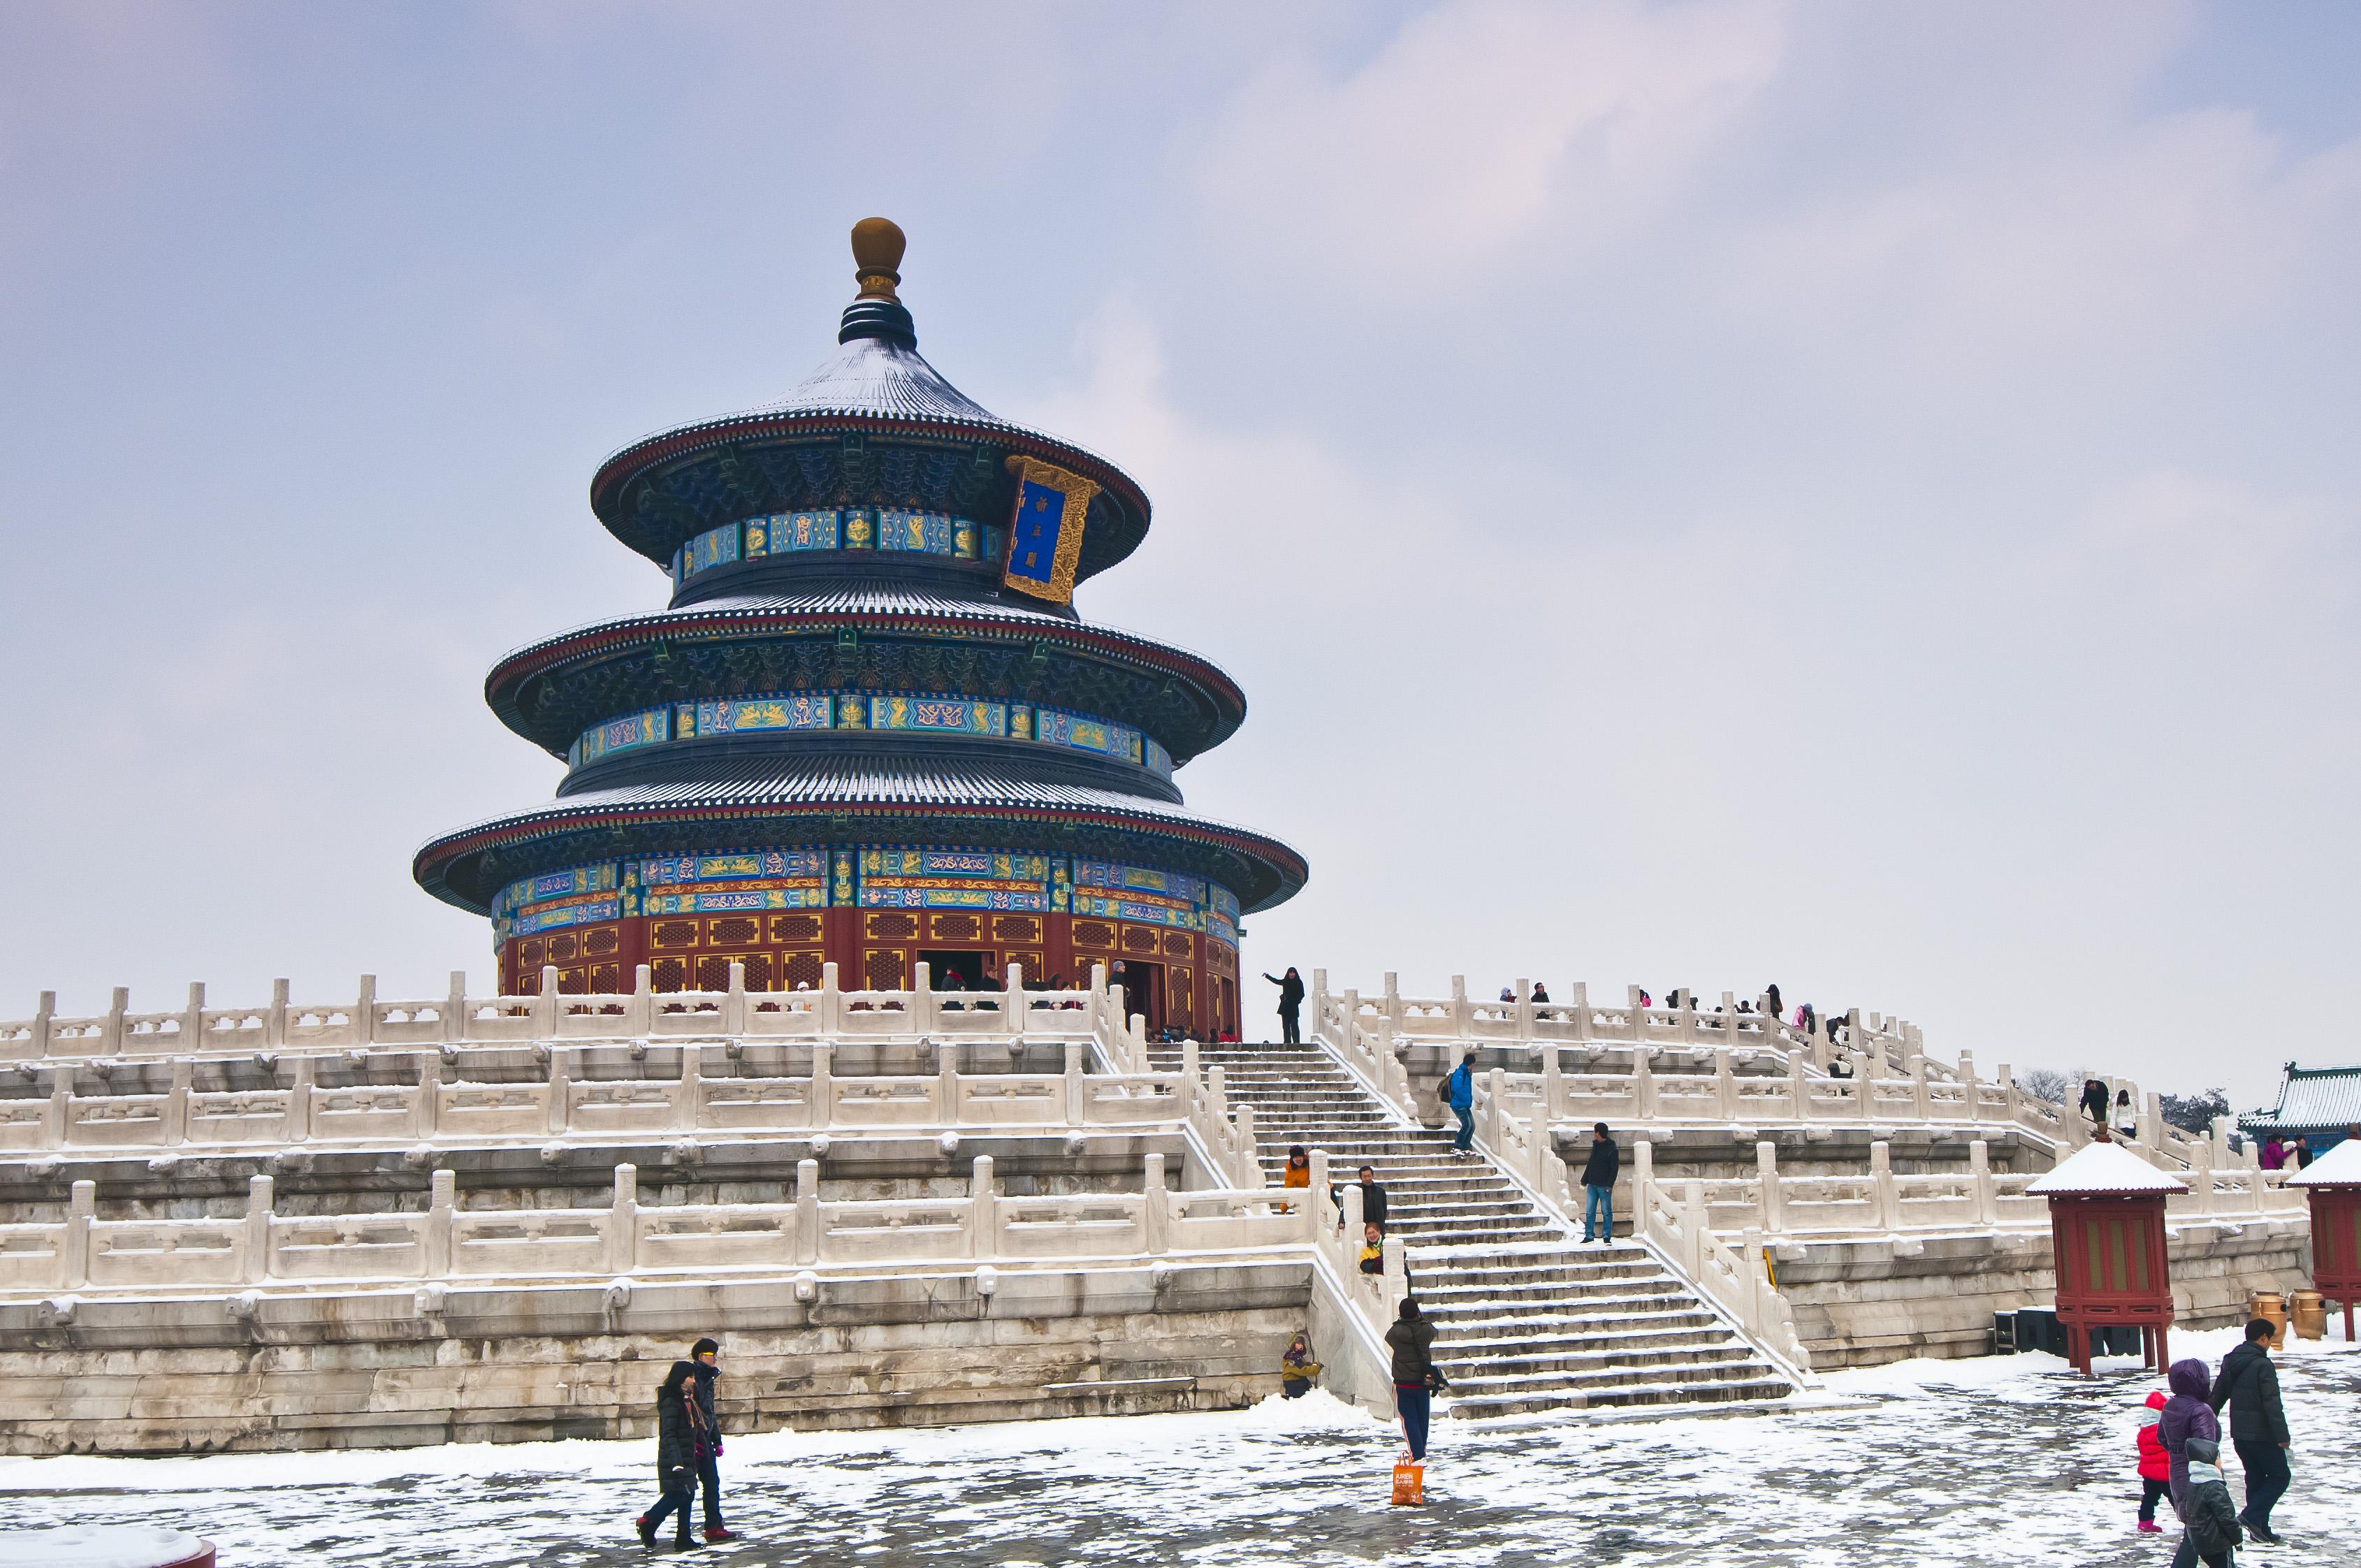 北京雪景图片2022图片